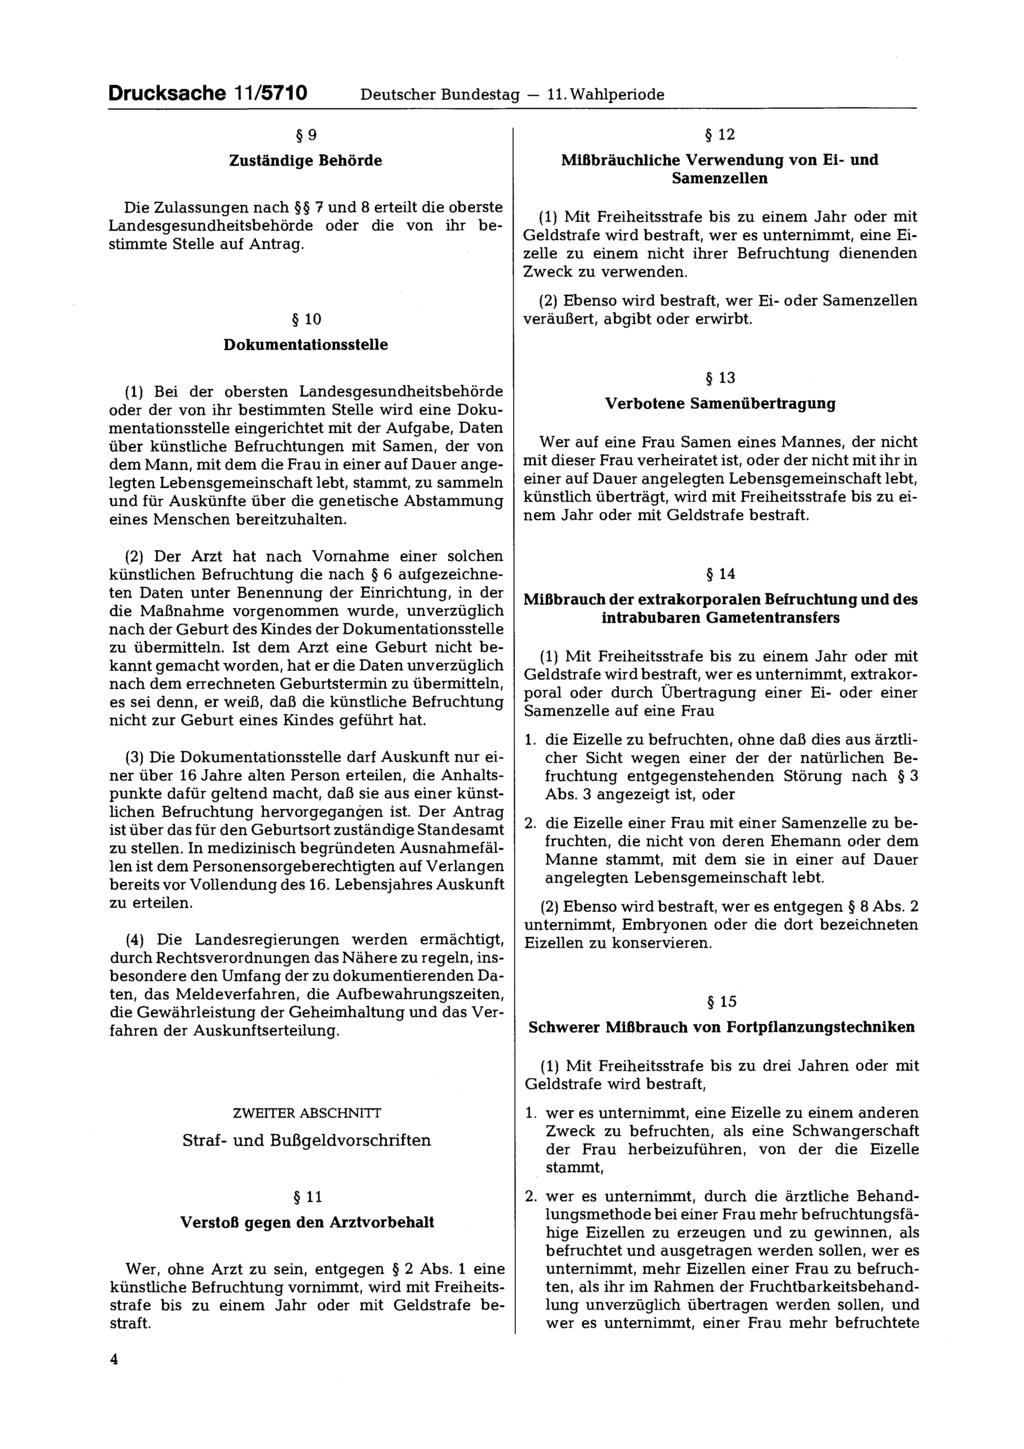 Drucksache 11/5710 Deutscher Bundestag 11. Wahlperiode 9 Zuständige Behörde Die Zulassungen nach 7 und 8 erteilt die oberste Landesgesundheitsbehörde oder die von ihr bestimmte Stelle auf Antrag.